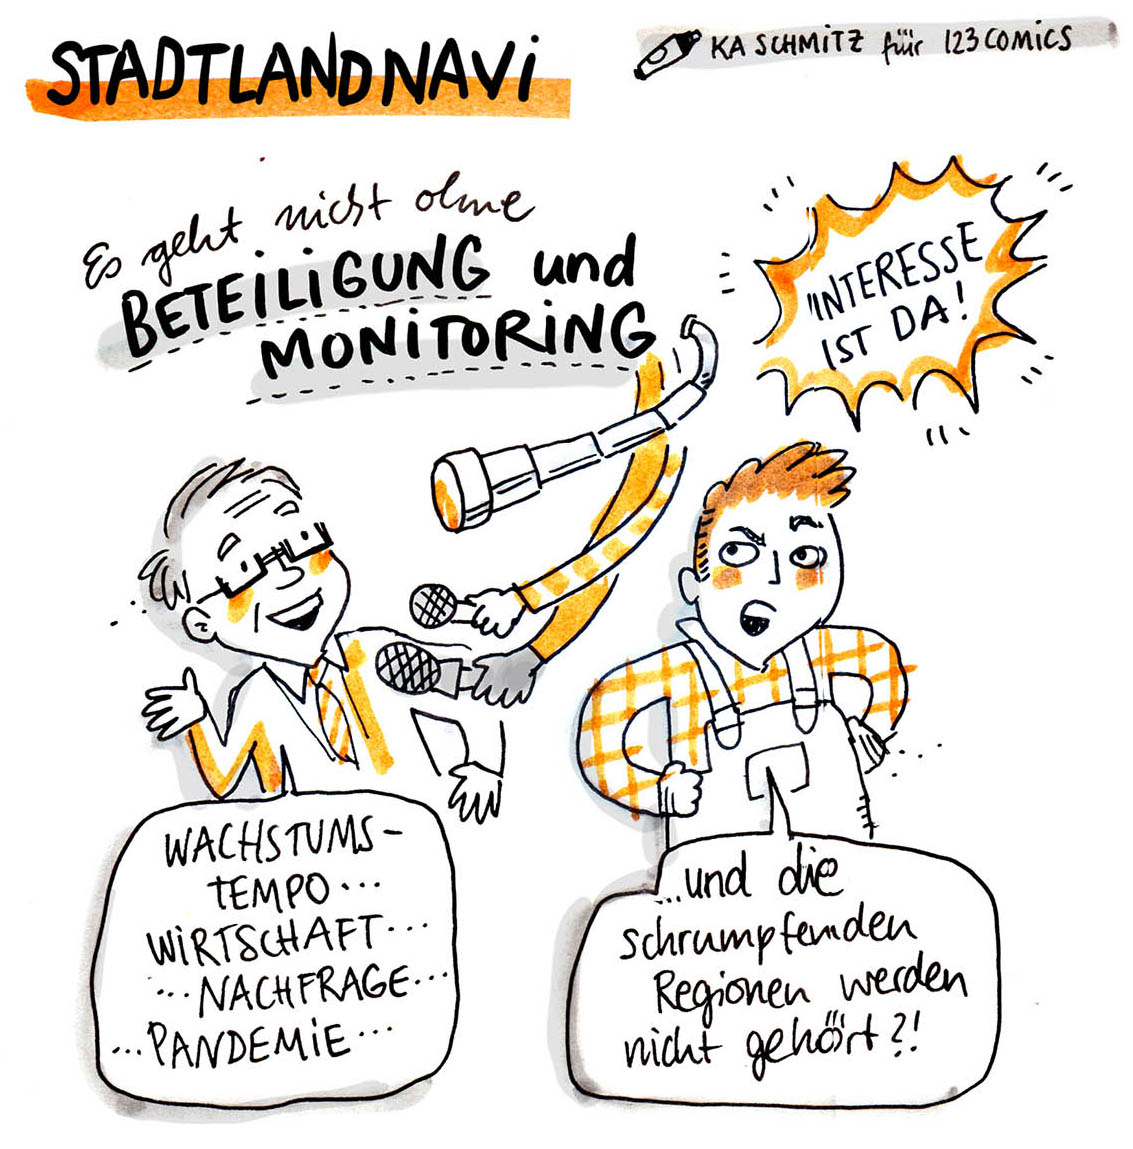 Sketch StadtLandNavi von der Statuskonferenz 2020 (Bild: 123comics)